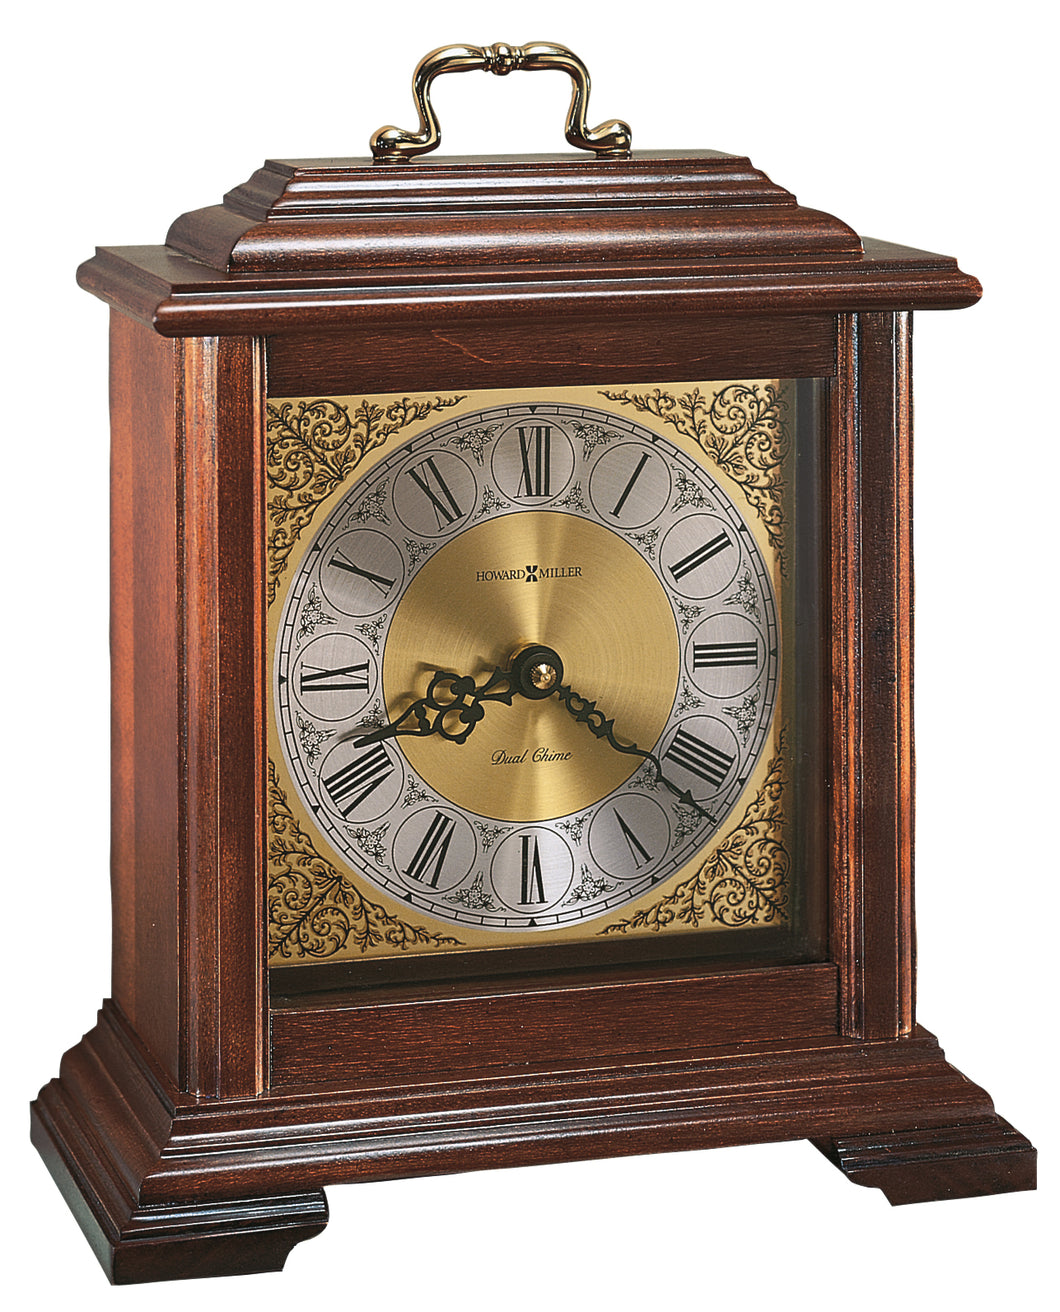 Medford Mantel Clock